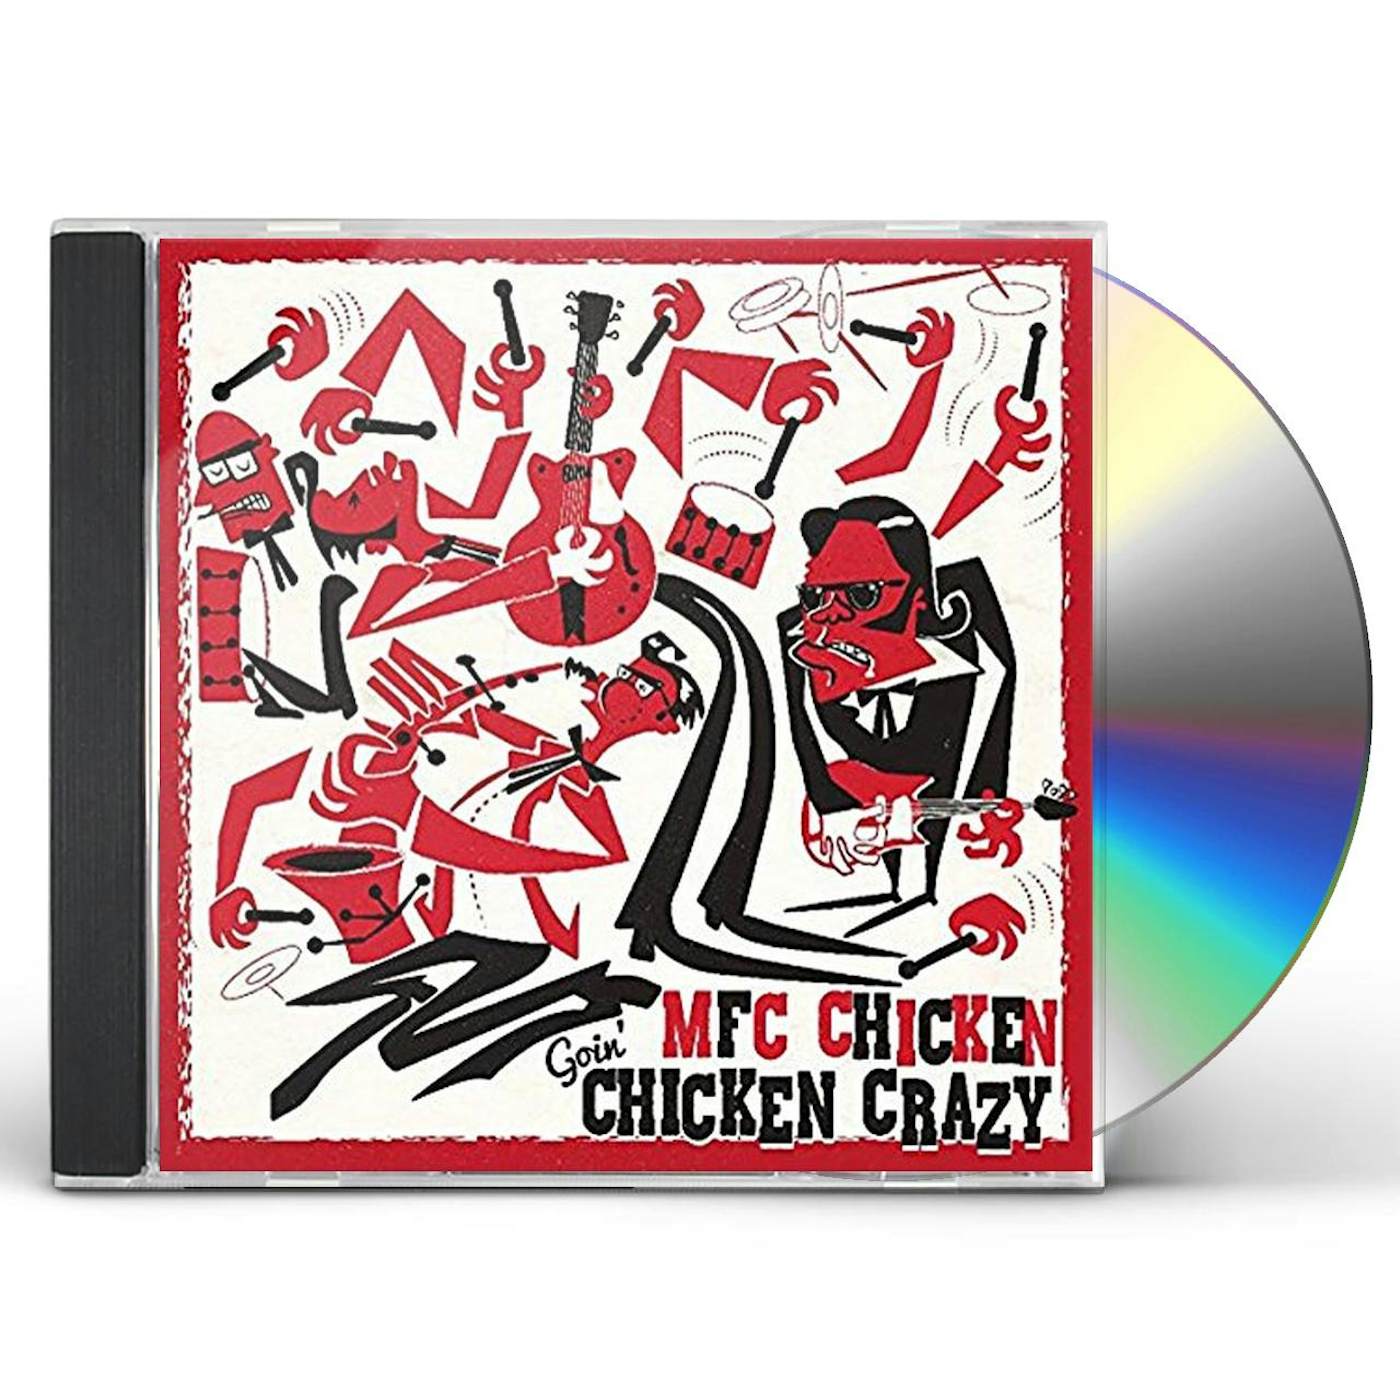 MFC Chicken GOIN' CHICKEN CRAZY CD